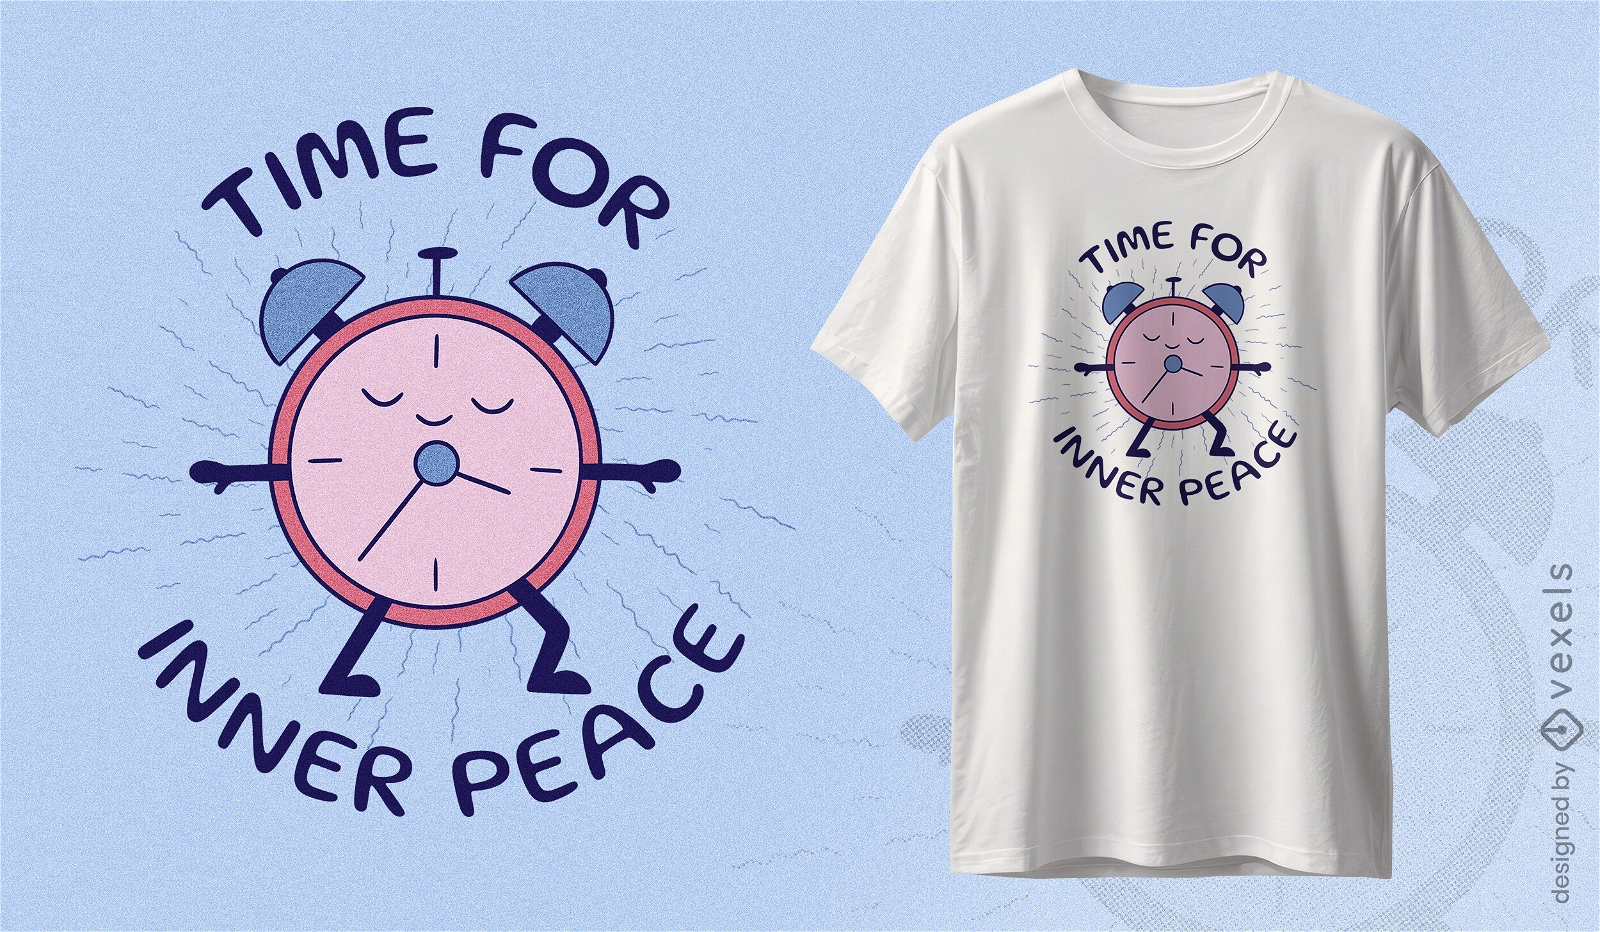 Hora do design de camiseta com relógio de paz interior